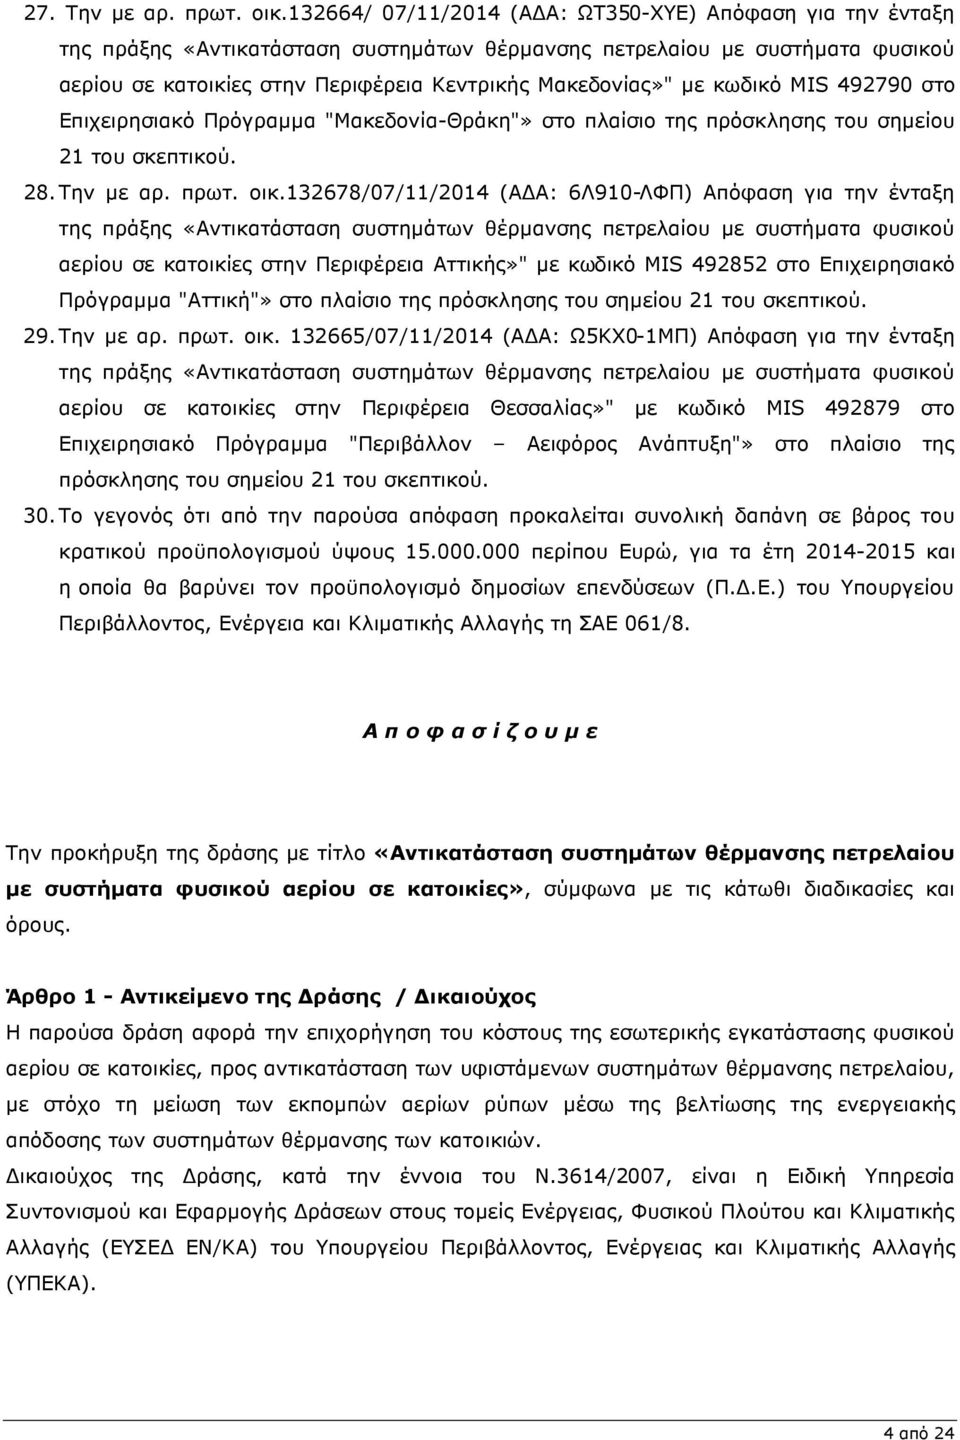 κωδικό MIS 492790 στο Επιχειρησιακό Πρόγραµµα "Μακεδονία-Θράκη"» στο πλαίσιο της πρόσκλησης του σηµείου 21 του σκεπτικού. 28. Την µε αρ. πρωτ. οικ.